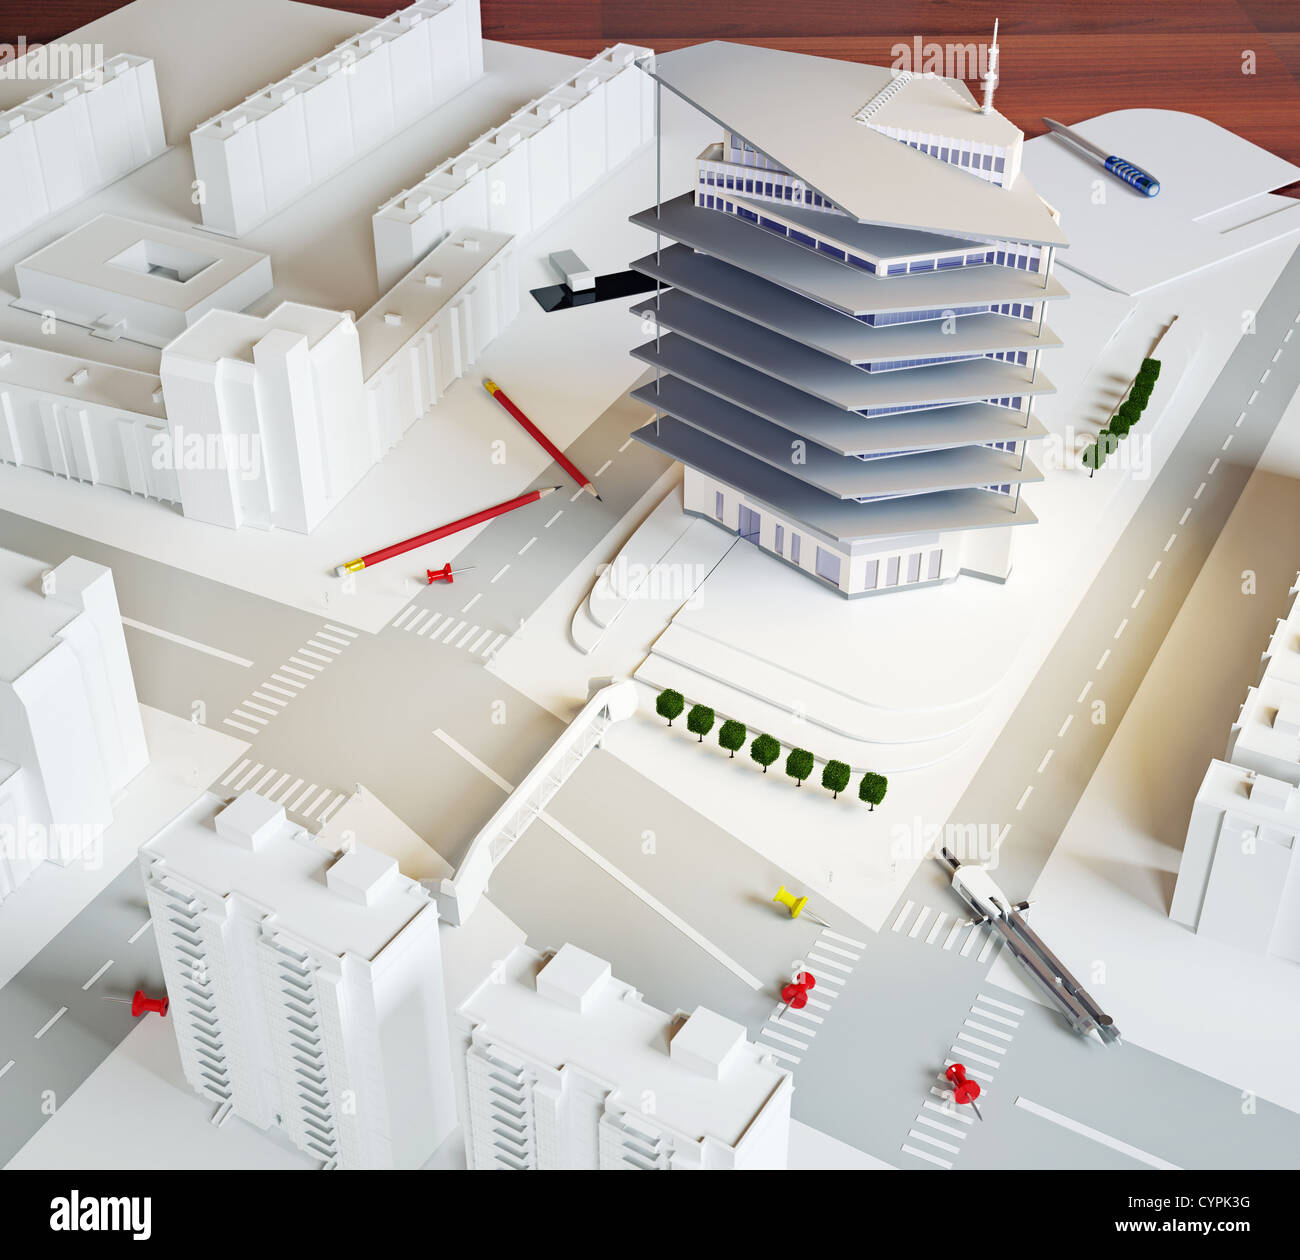 Architekturmodell eines modernen Gebäudes (Abbildung) Stockfoto